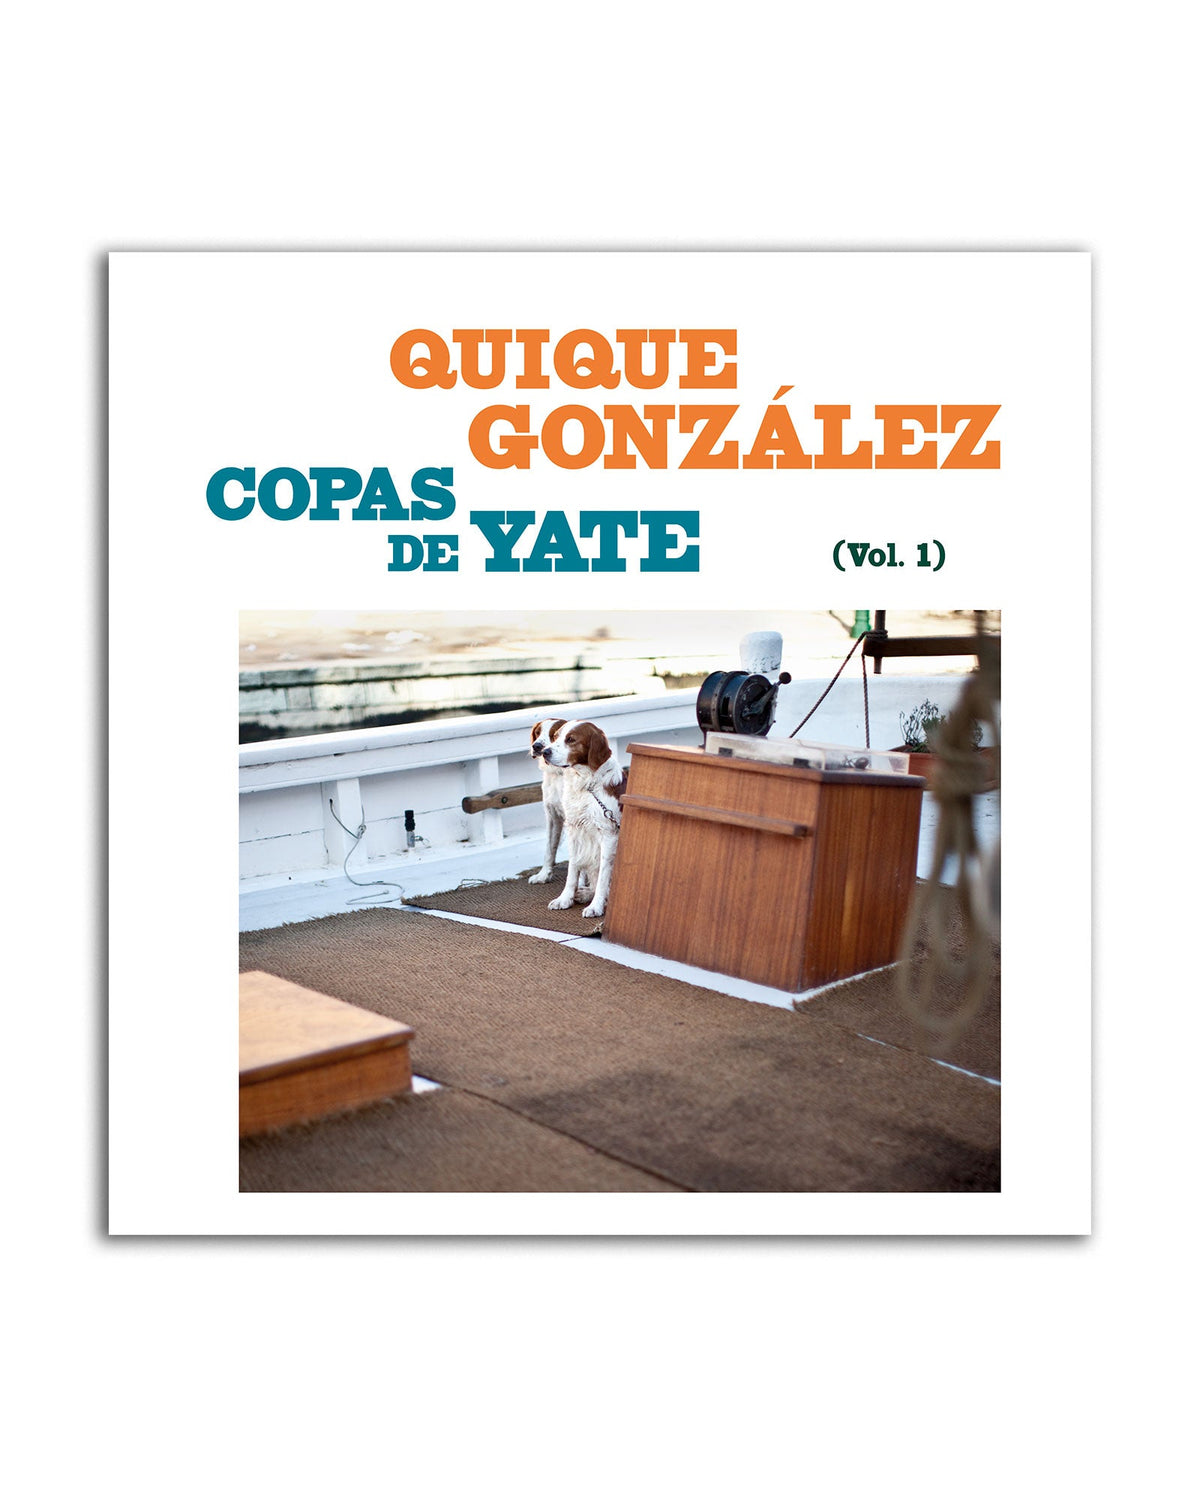 Quique González - CD "Copas de Yate (Vol. I)" - D2fy · Rocktud - Quique González